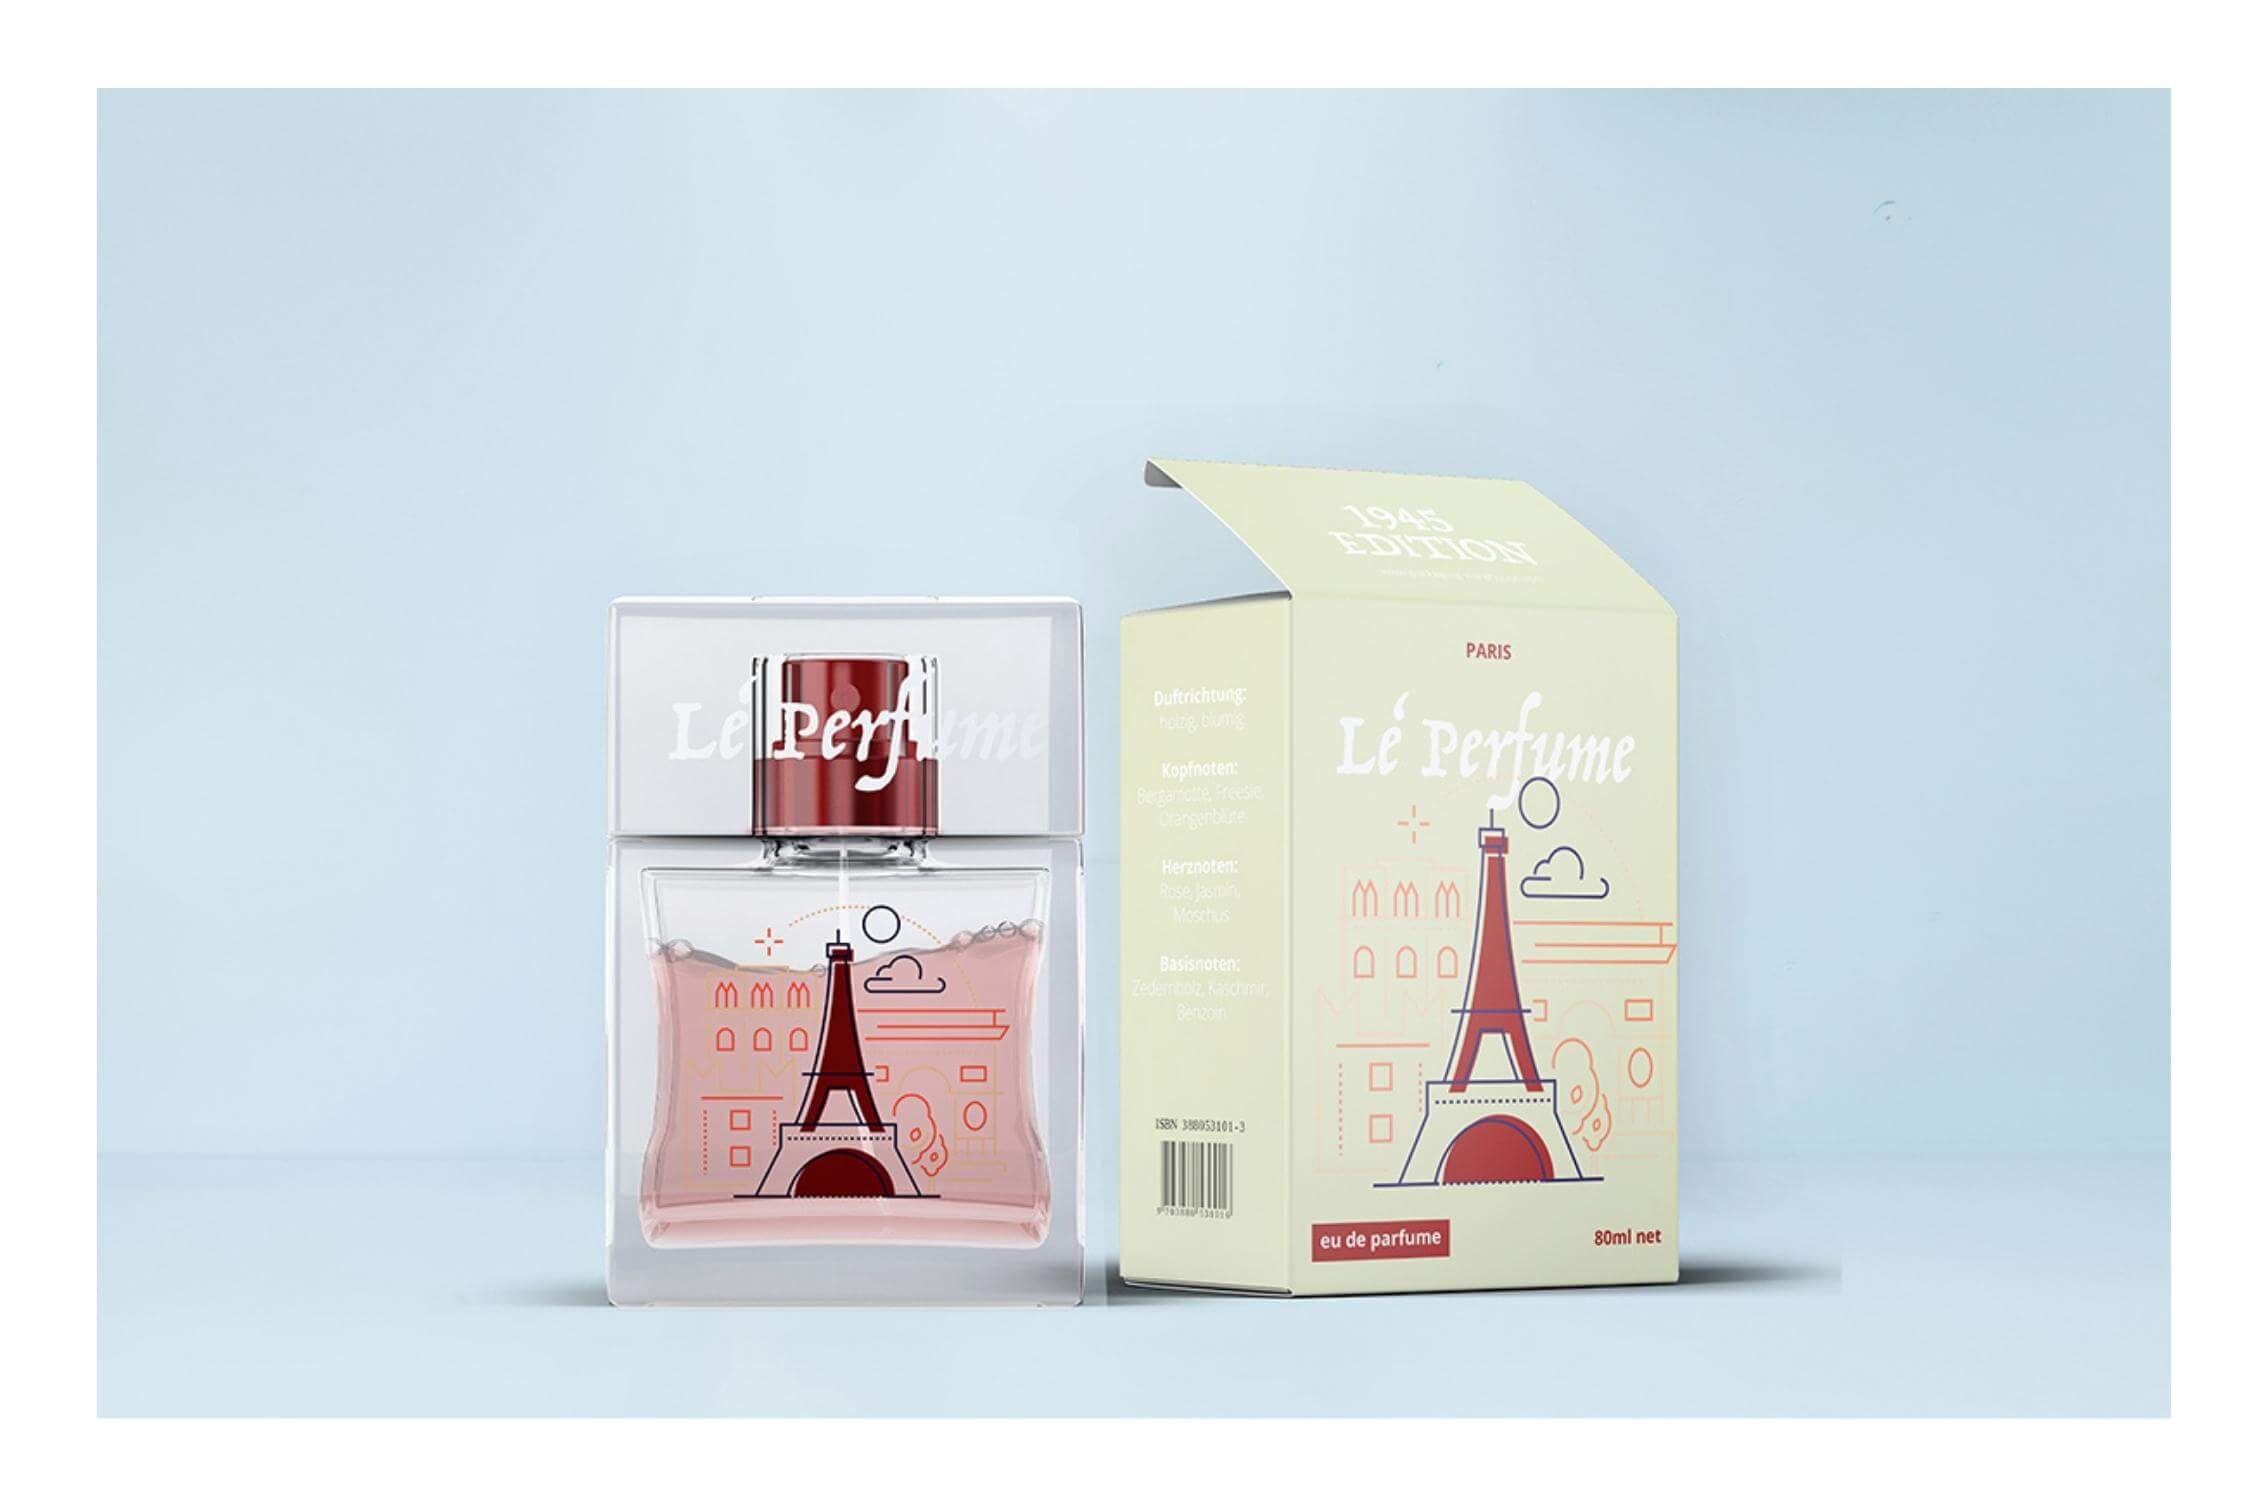 Individuelle Designs für Parfüm Verpackungen